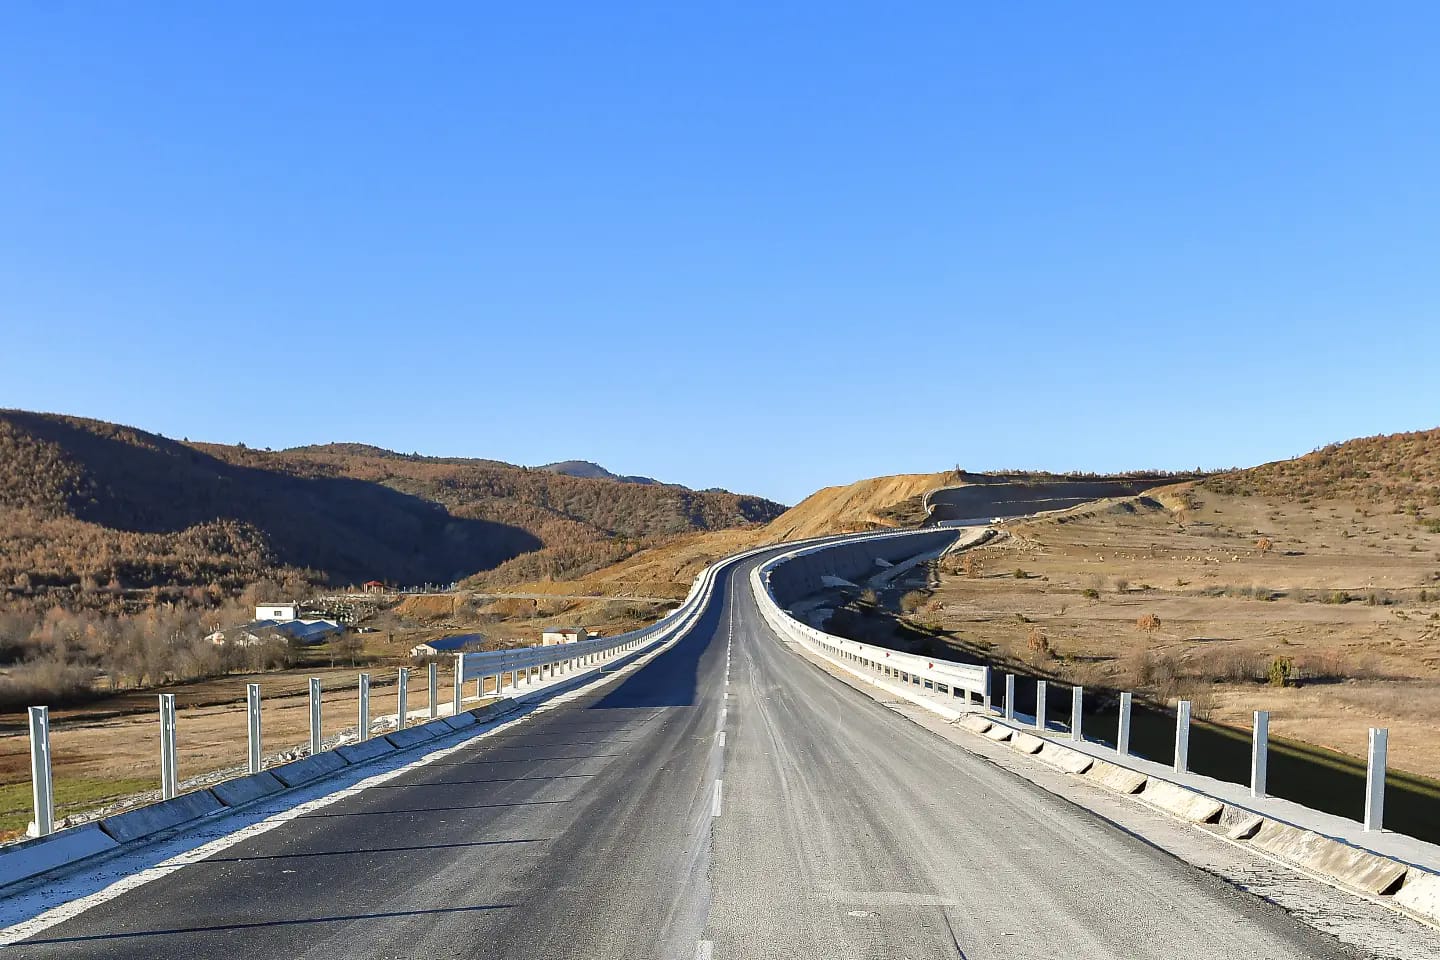 BERZH dhe BE financim infrastrukturës turistike, 100 km rrugë rajonale rindërtohen në Shqipëri këtë vit